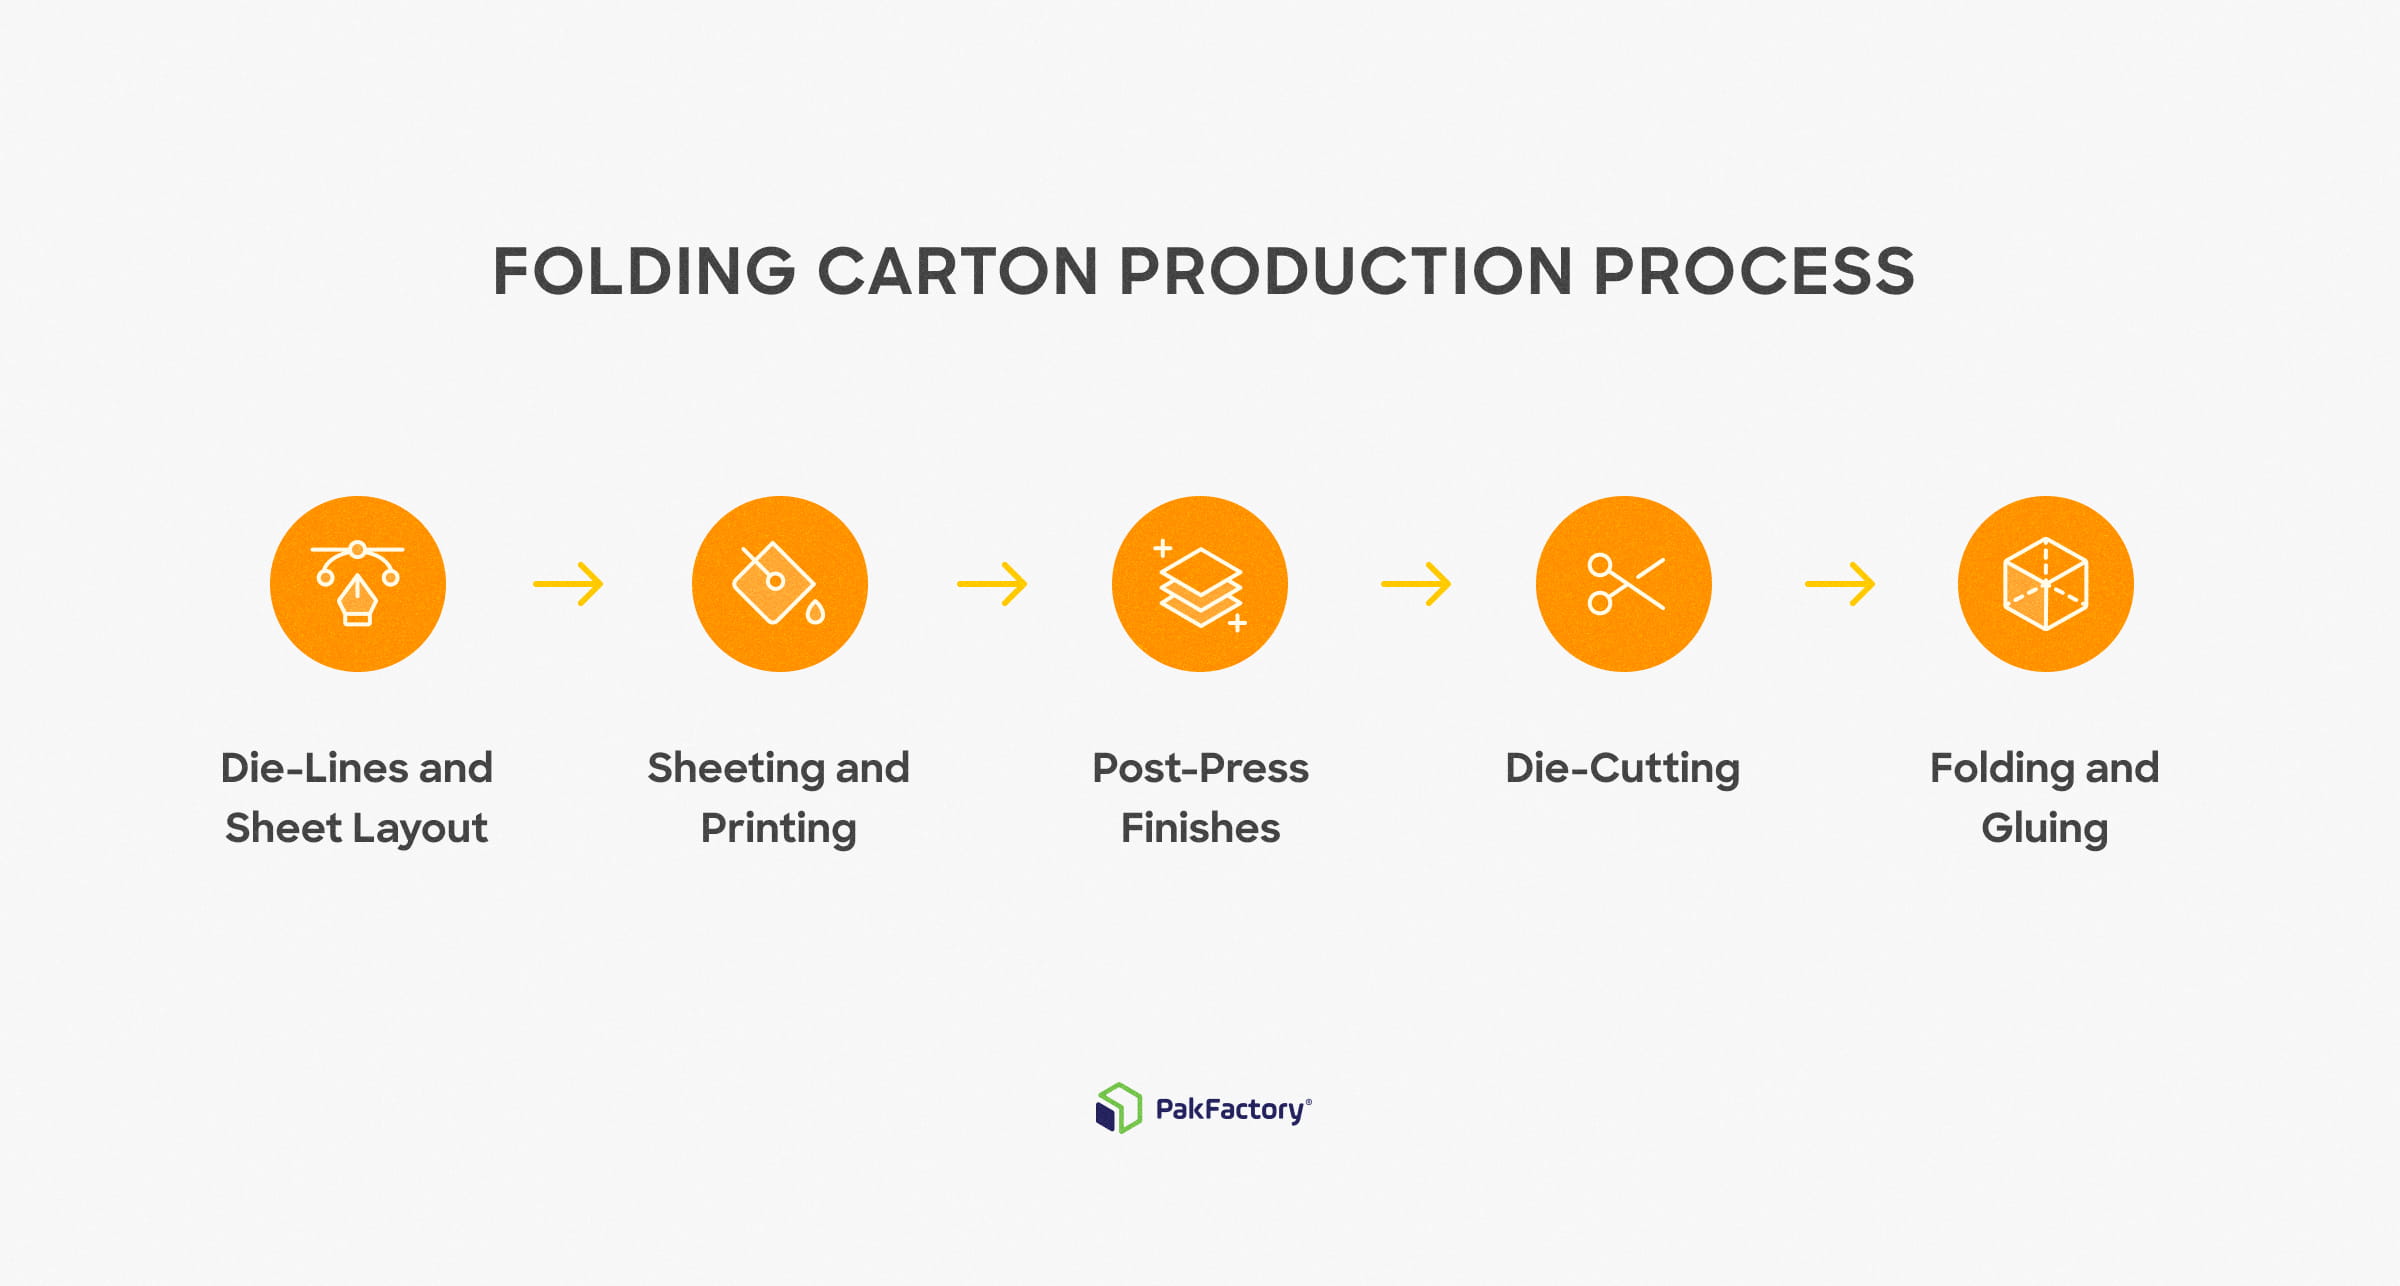 Folding carton production process.